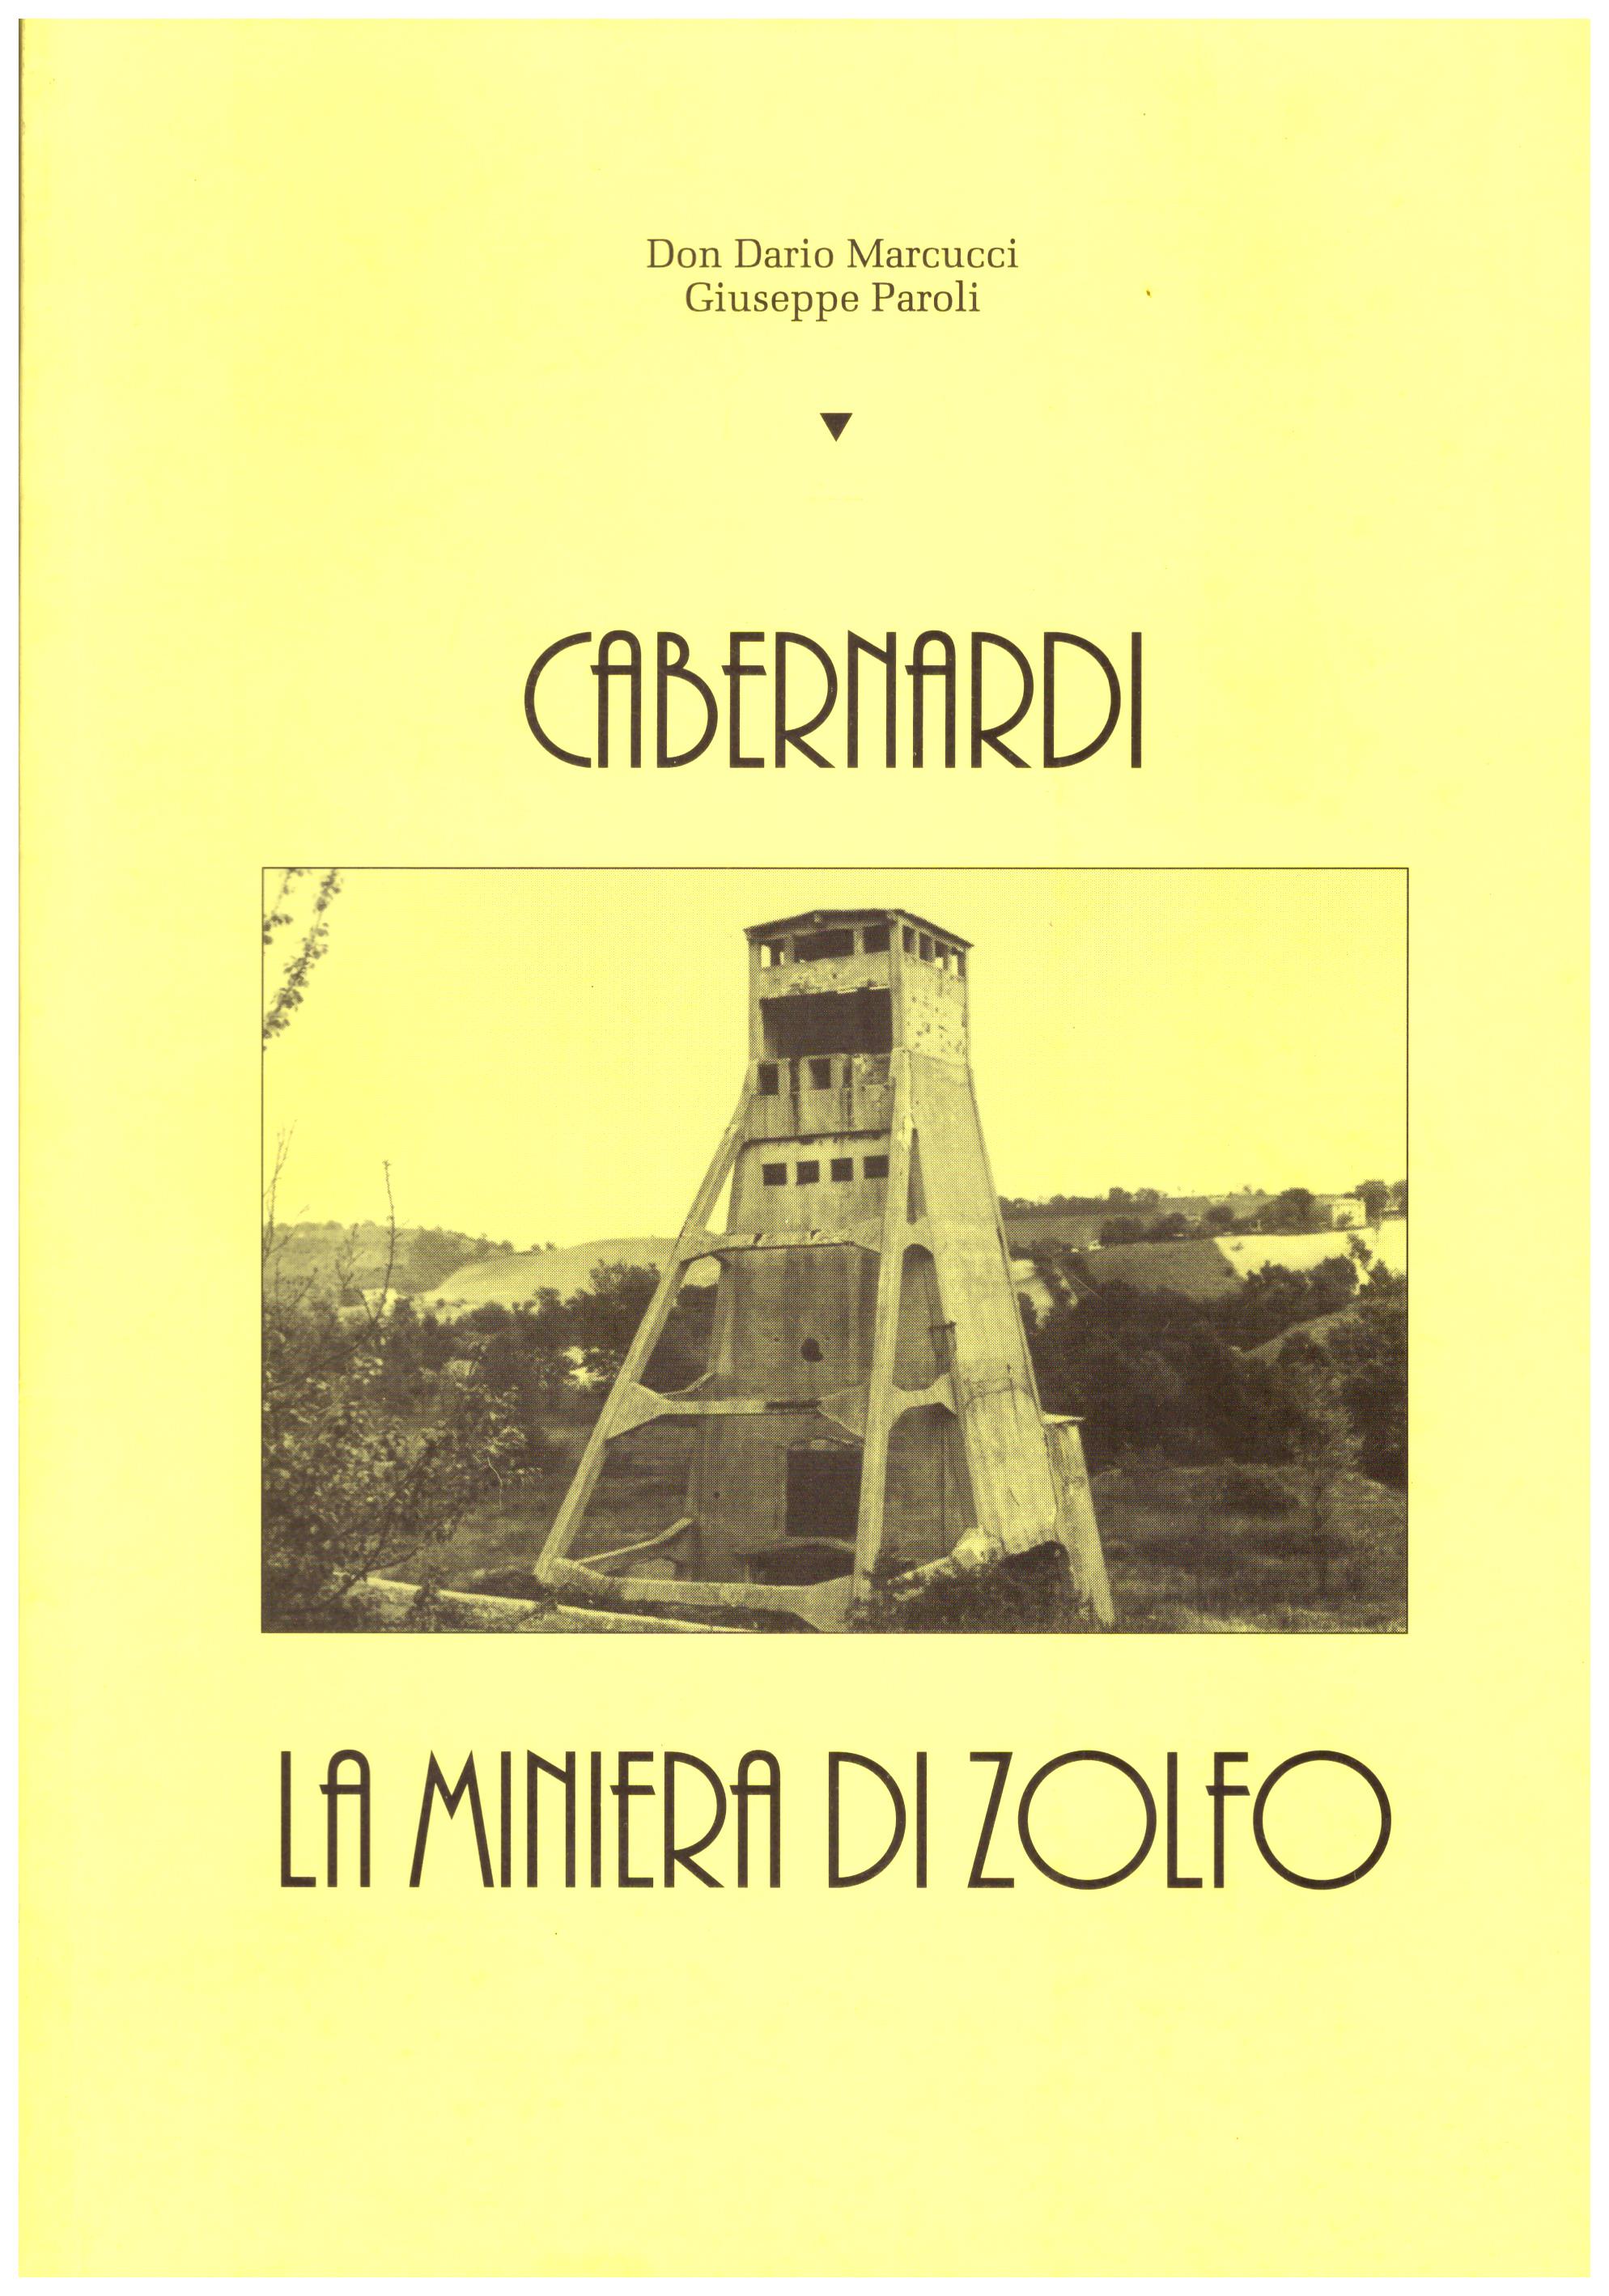 Titolo: Cabernardi, la miniera di zolfo Autore: AA.VV.   Editore: Don Dario Marcucci, Giuseppe Paroli